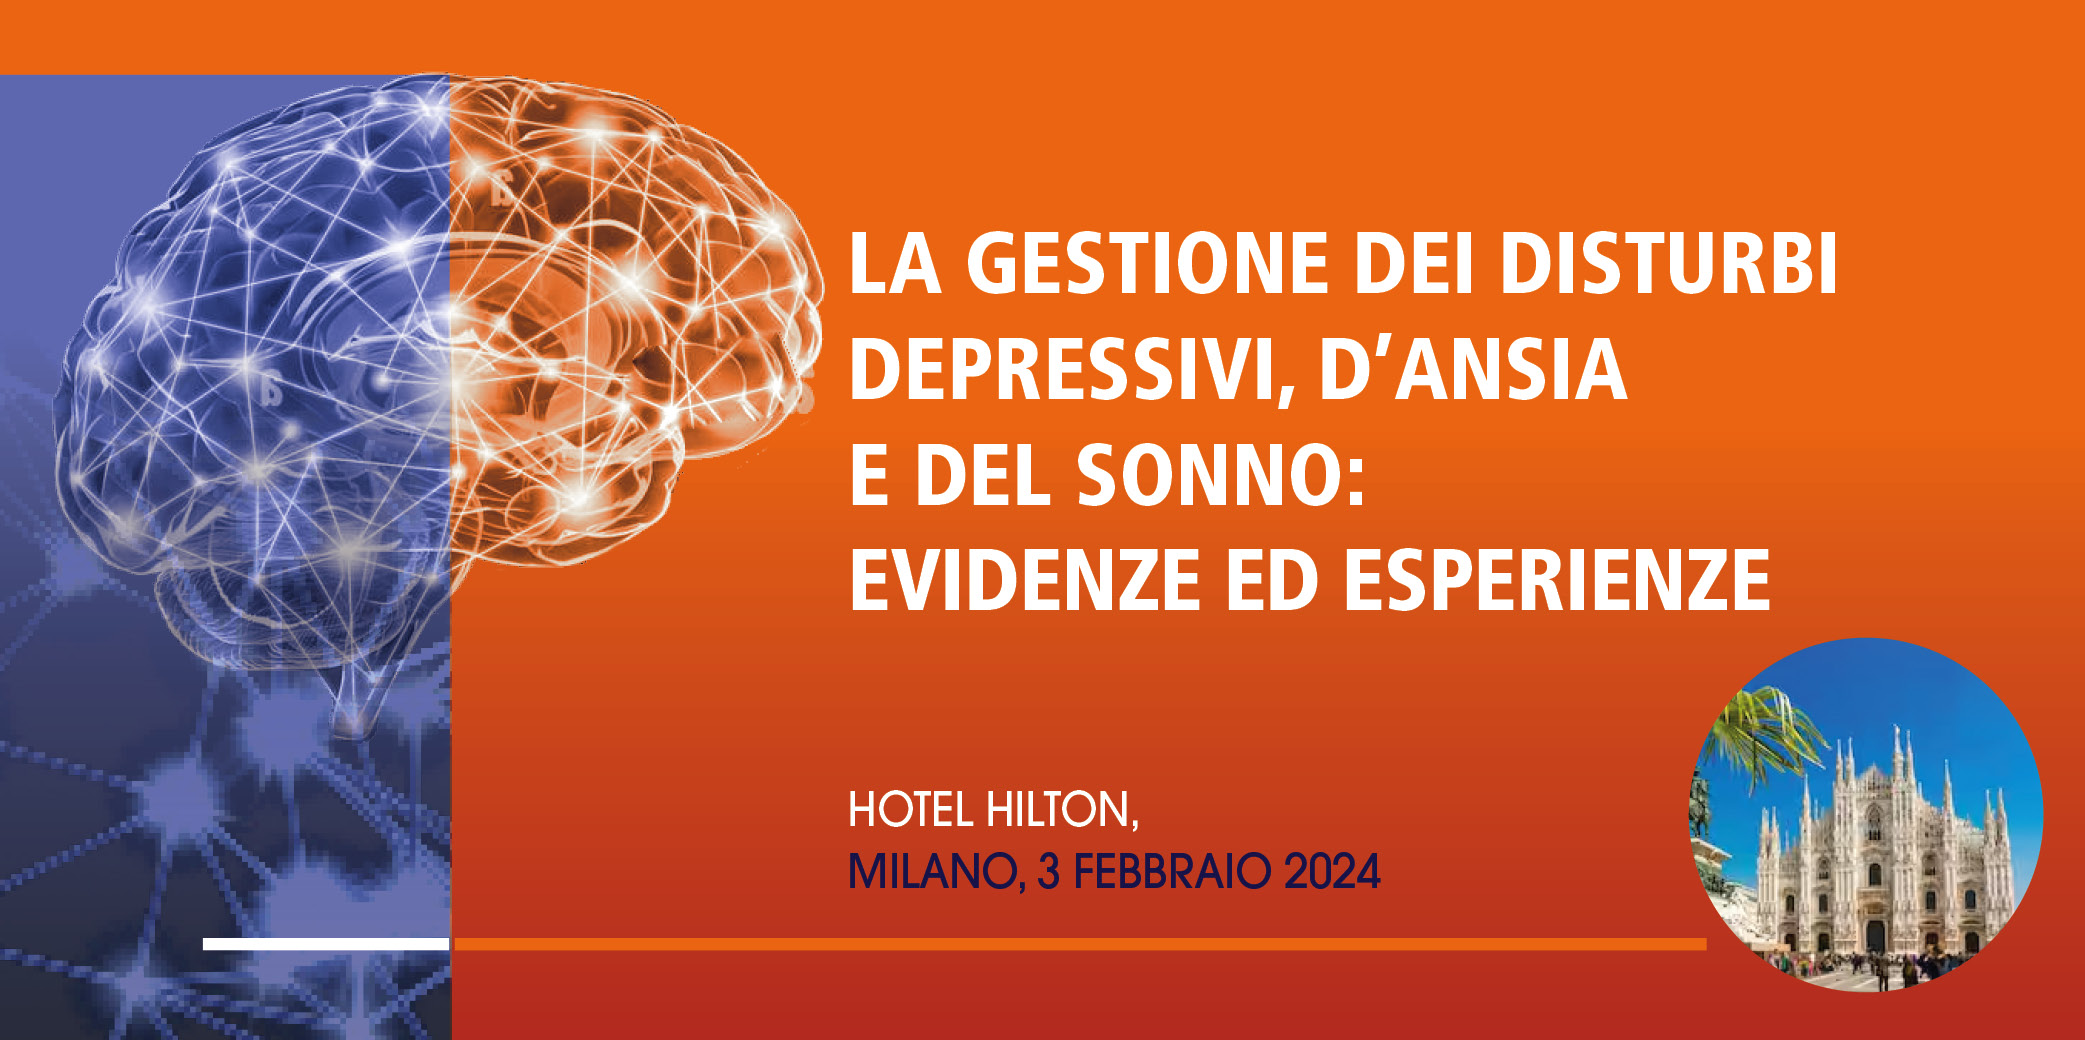 La gestione dei disturbi depressivi, d’ansia e del sonno: evidenze ed esperienze – Milano 3 Febbraio 2024